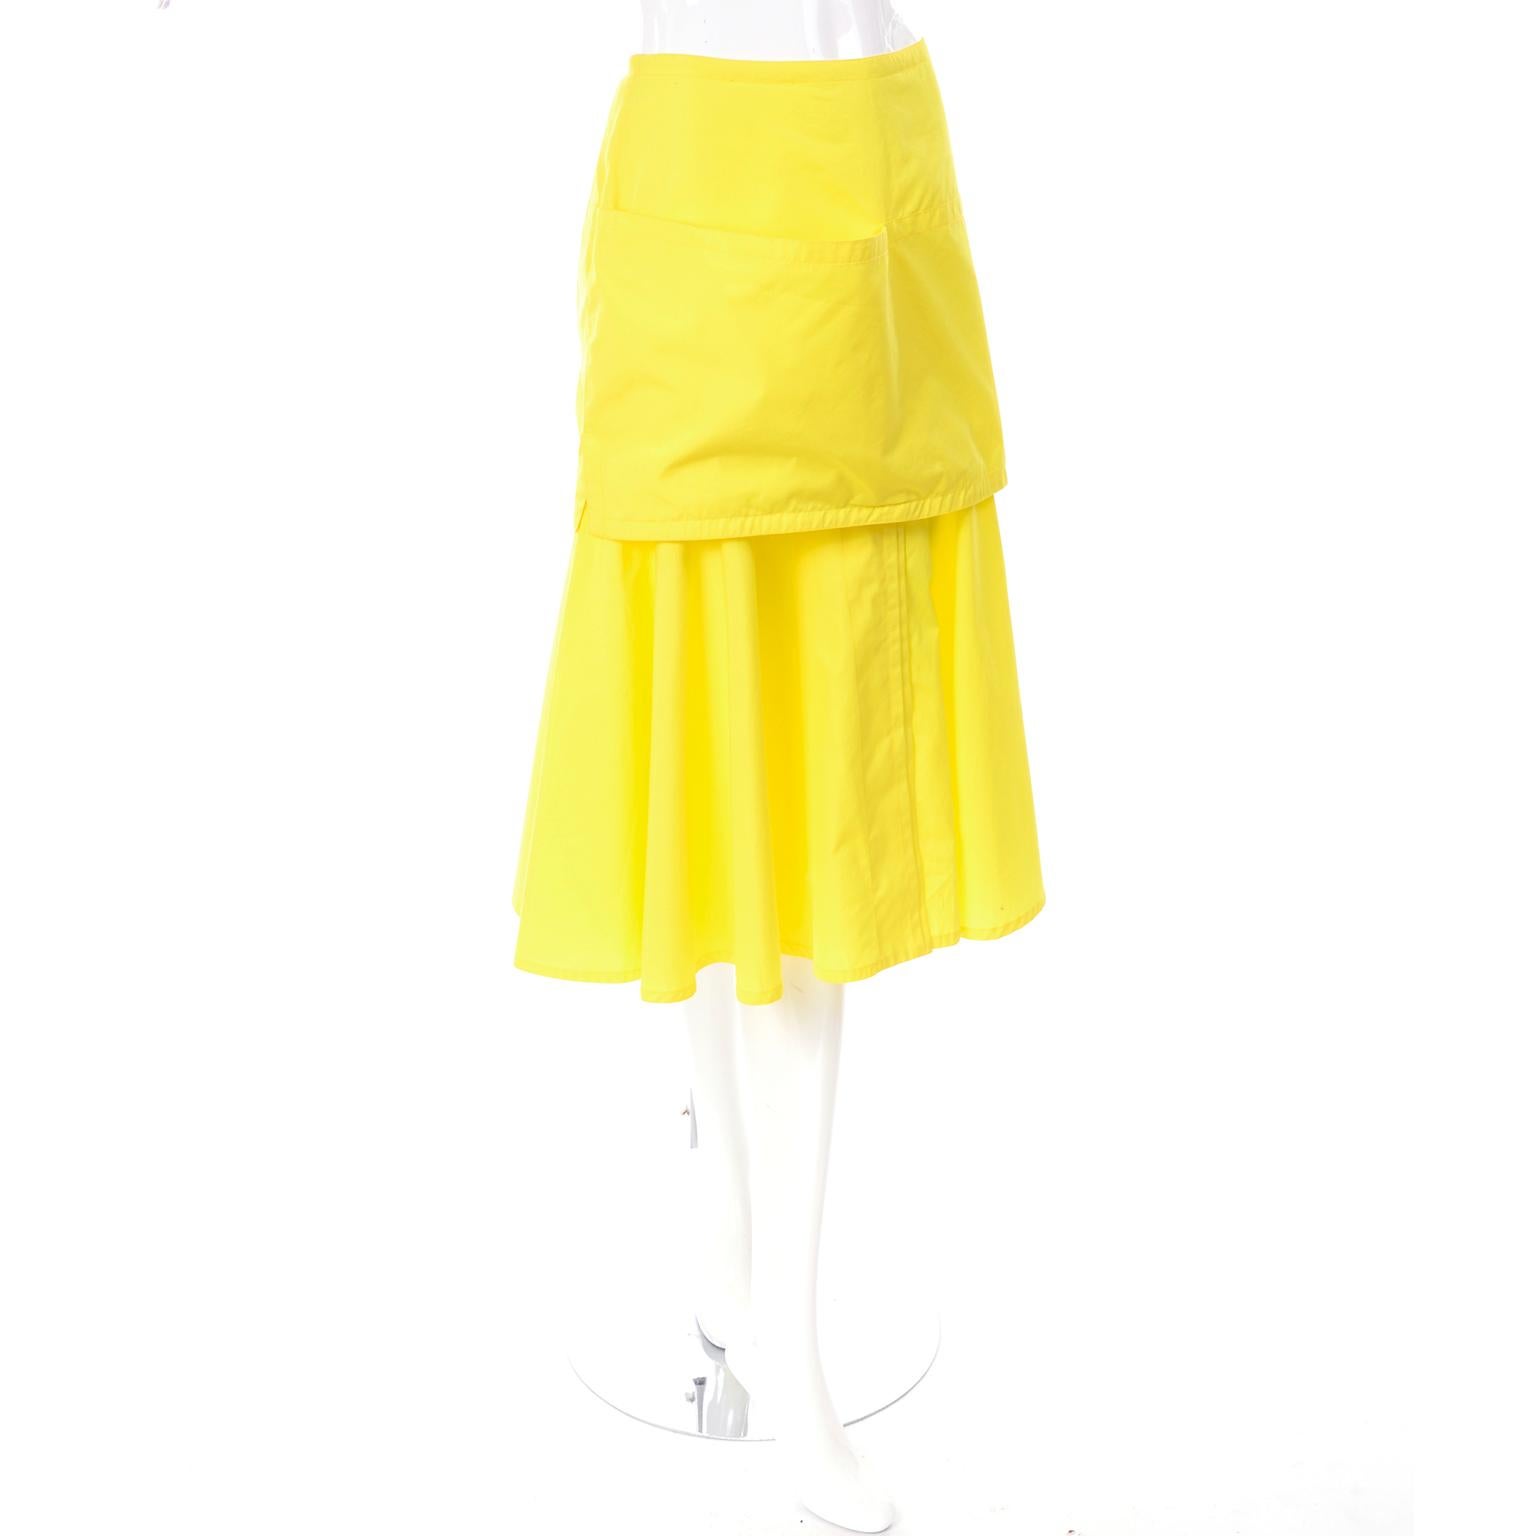 1980s flared skirt